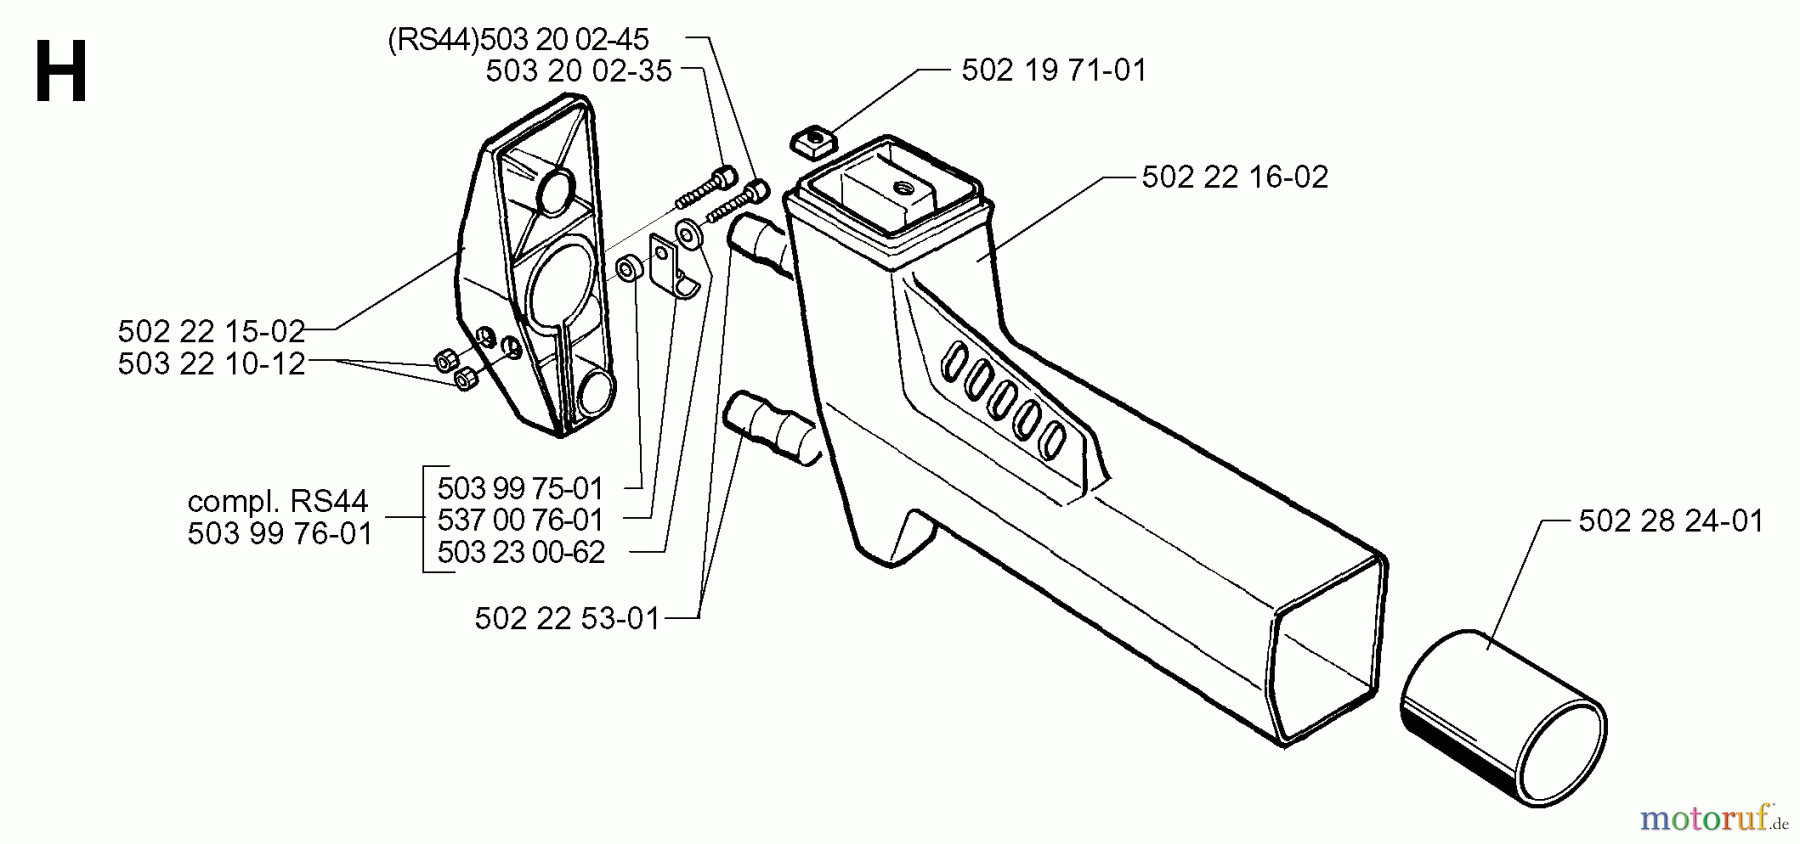  Jonsered Motorsensen, Trimmer GR50 - Jonsered String/Brush Trimmer (1998-06) TOWER